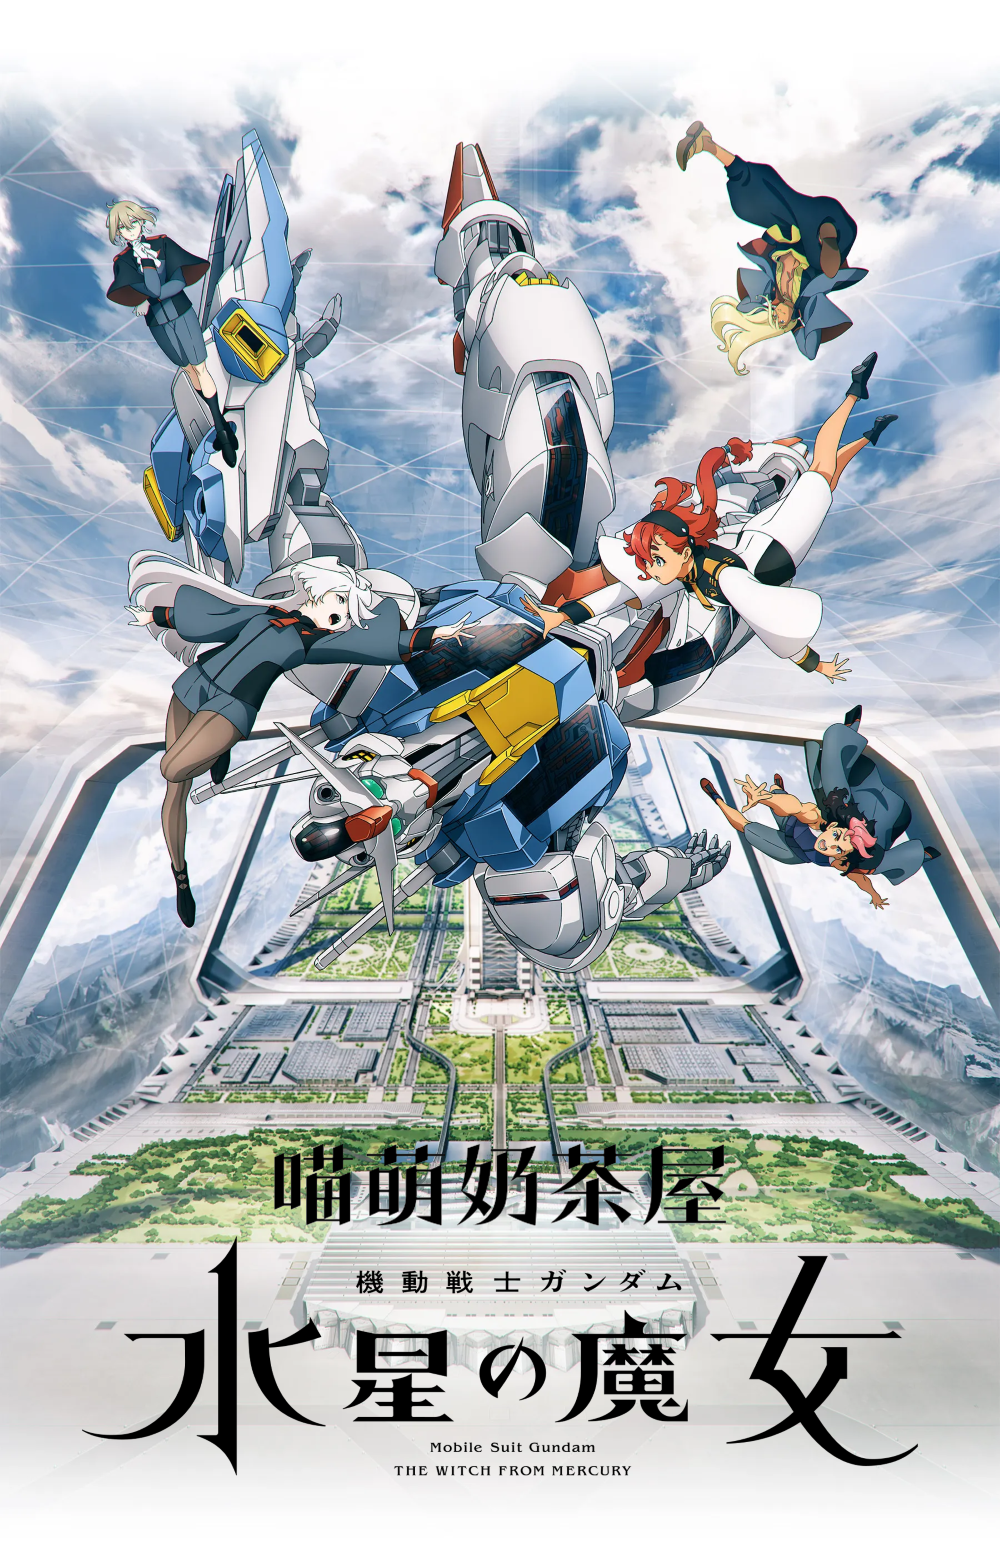 【喵萌奶茶屋】10月新番[機動戰士鋼彈 水星的魔女/Mobile Suit Gundam THE WITCH FROM MERCURY][01][720p][繁日雙語][招募翻譯]